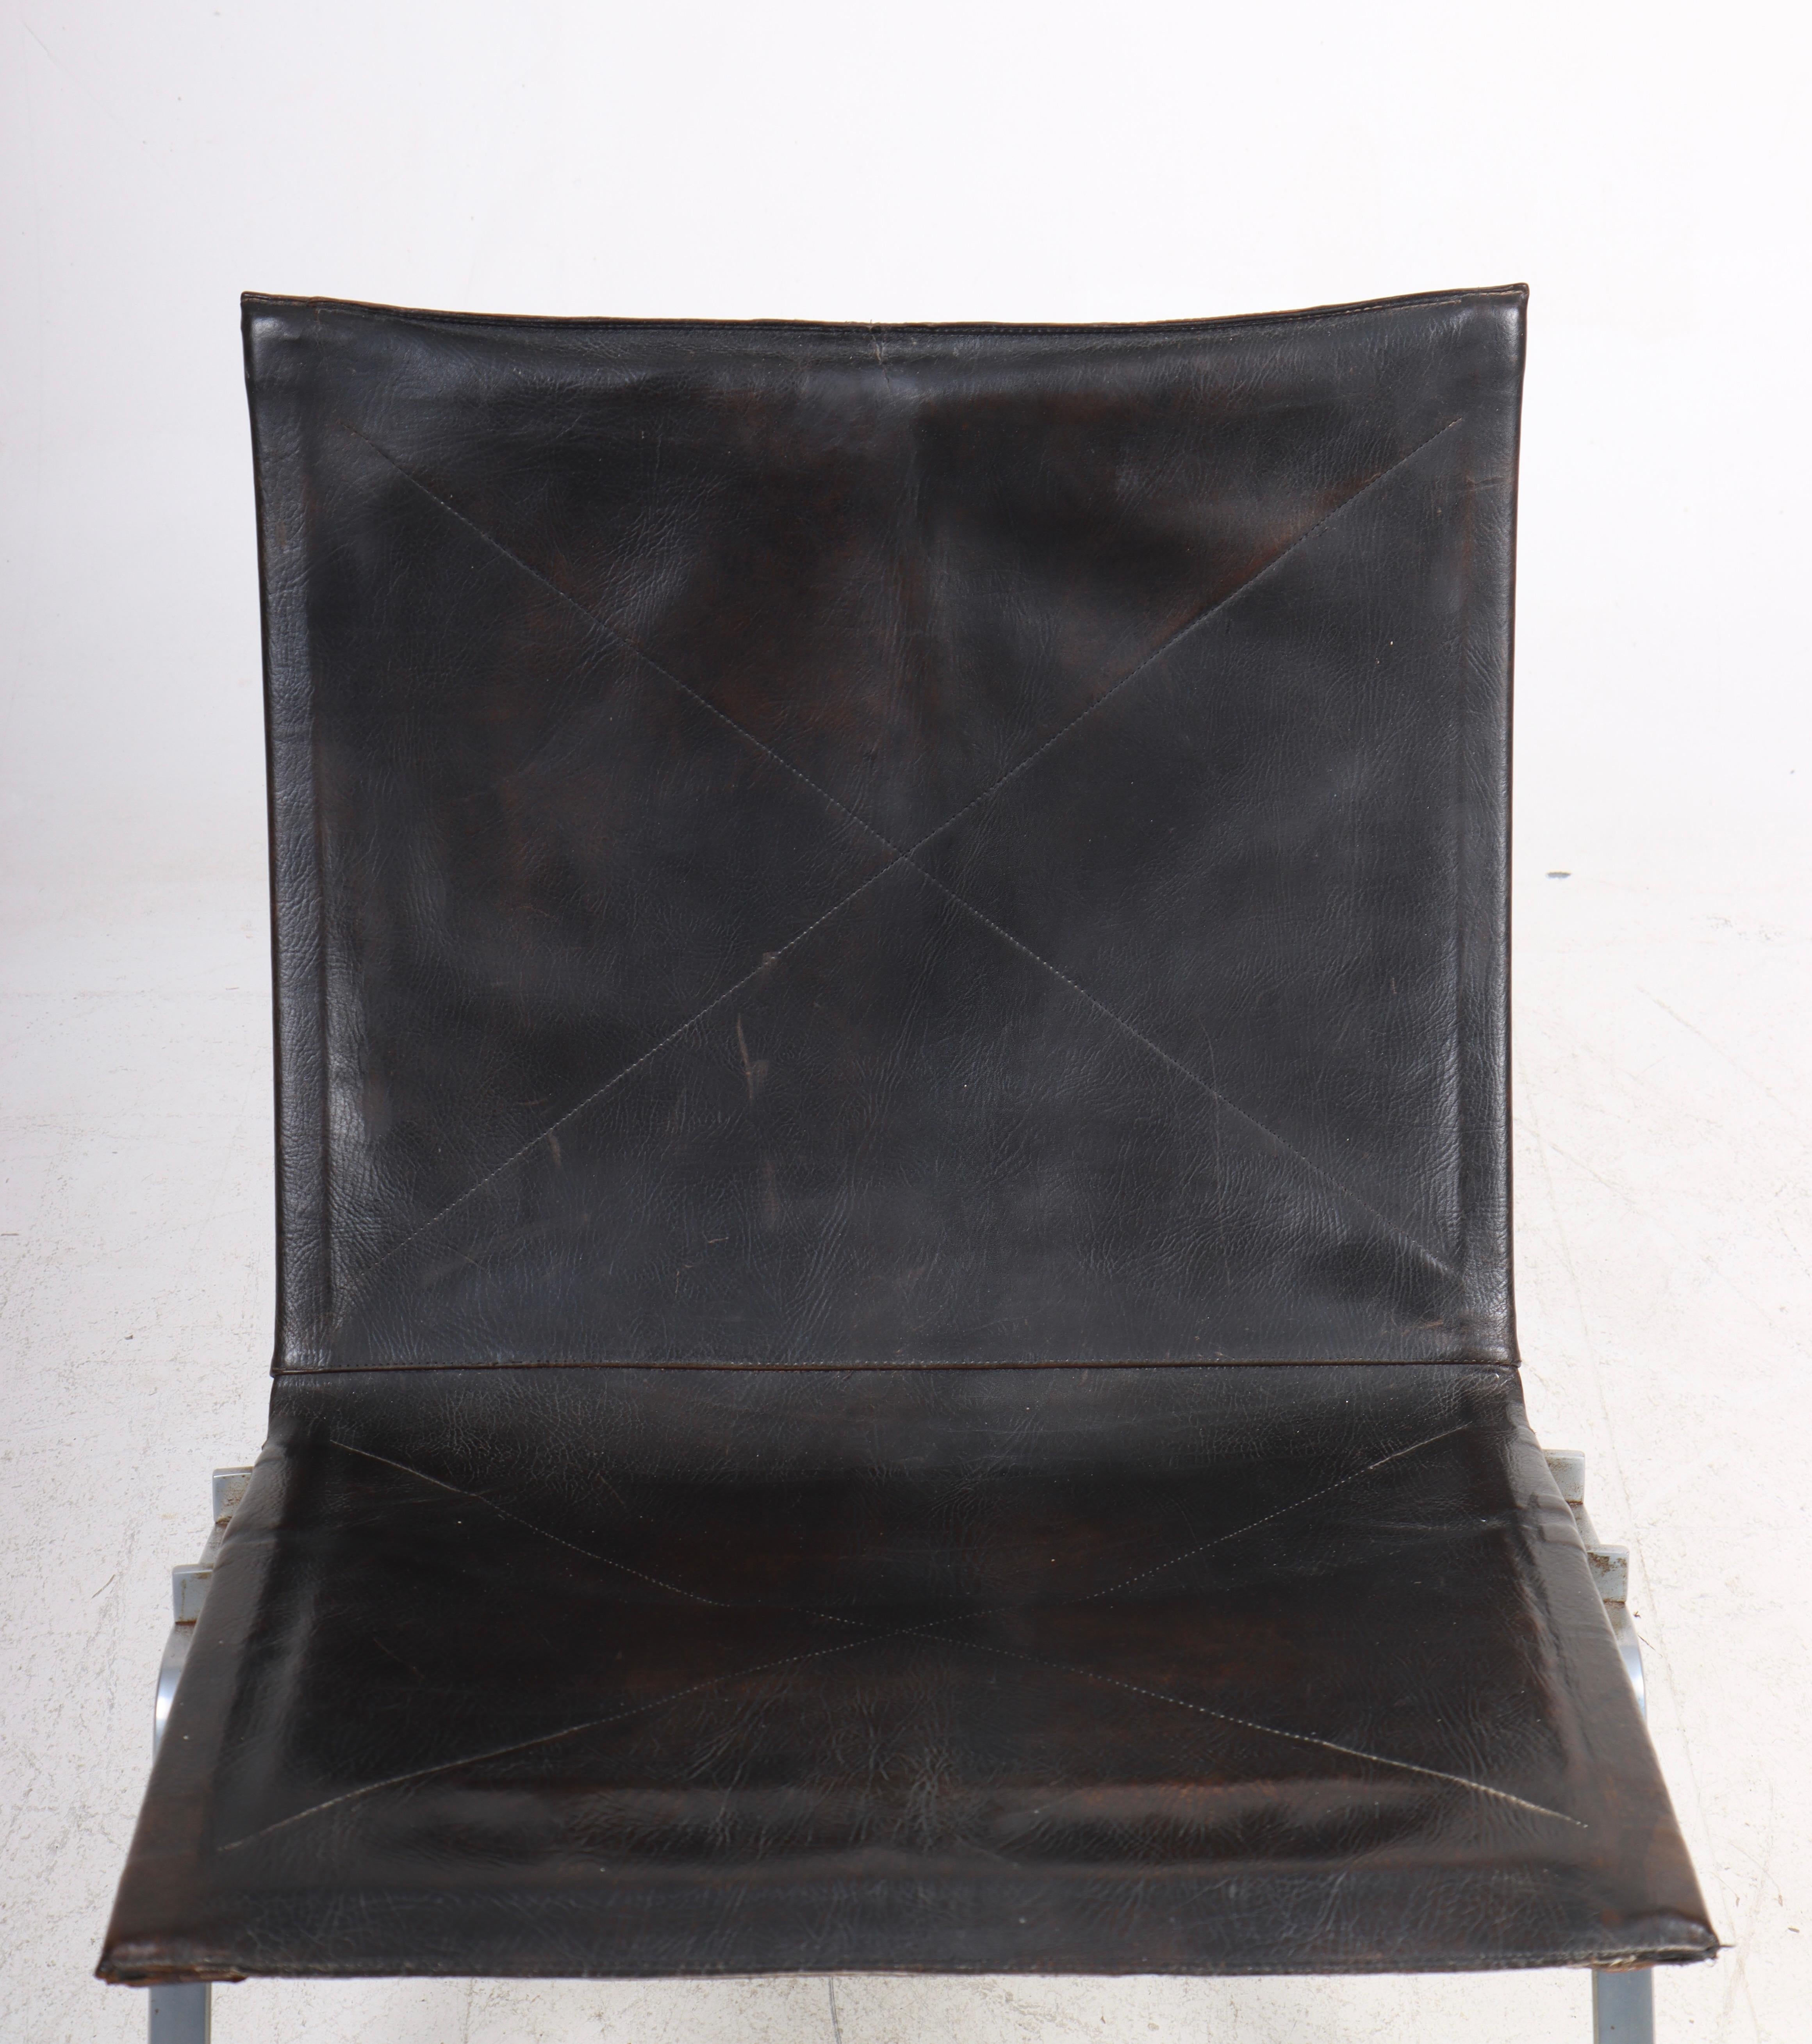 Toller PK22 Lounge-Sessel aus patiniertem Leder. Entworfen von Maa. Poul Kjærholm für Kold Christensen. Hergestellt in Dänemark. Ursprünglicher Zustand.